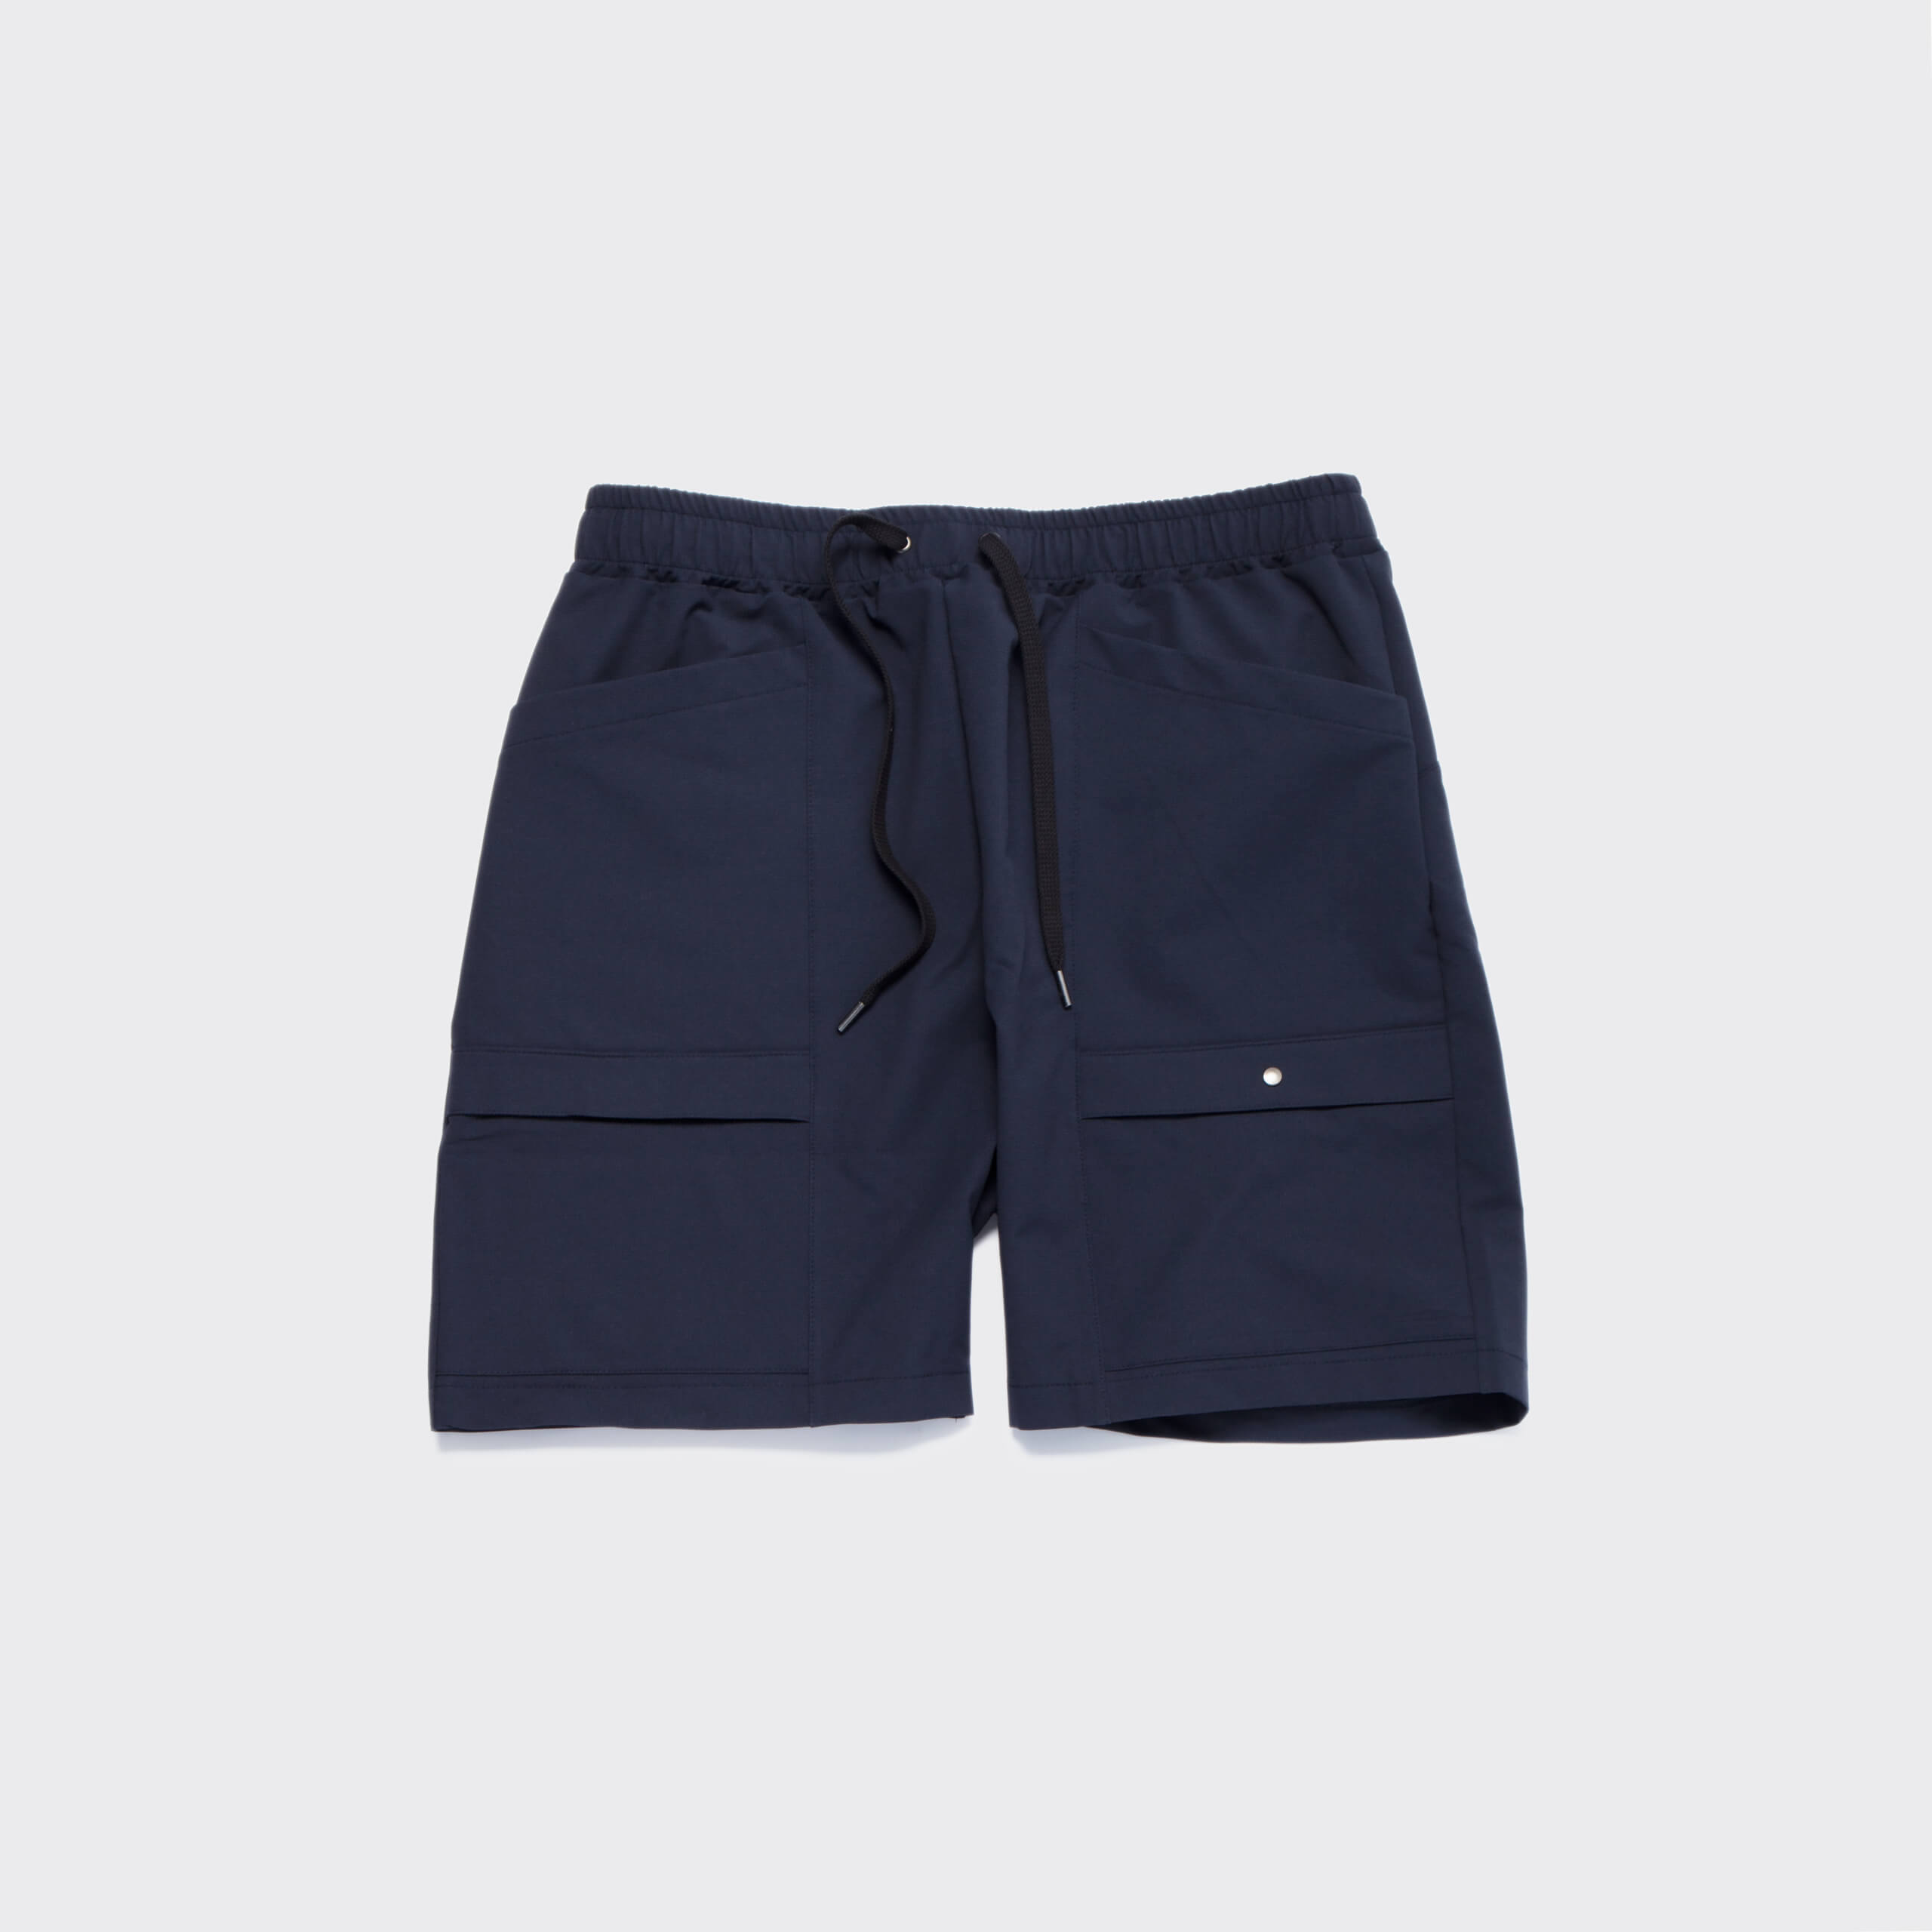 movit-fit-stretch-pocket-shorts-navy_p2